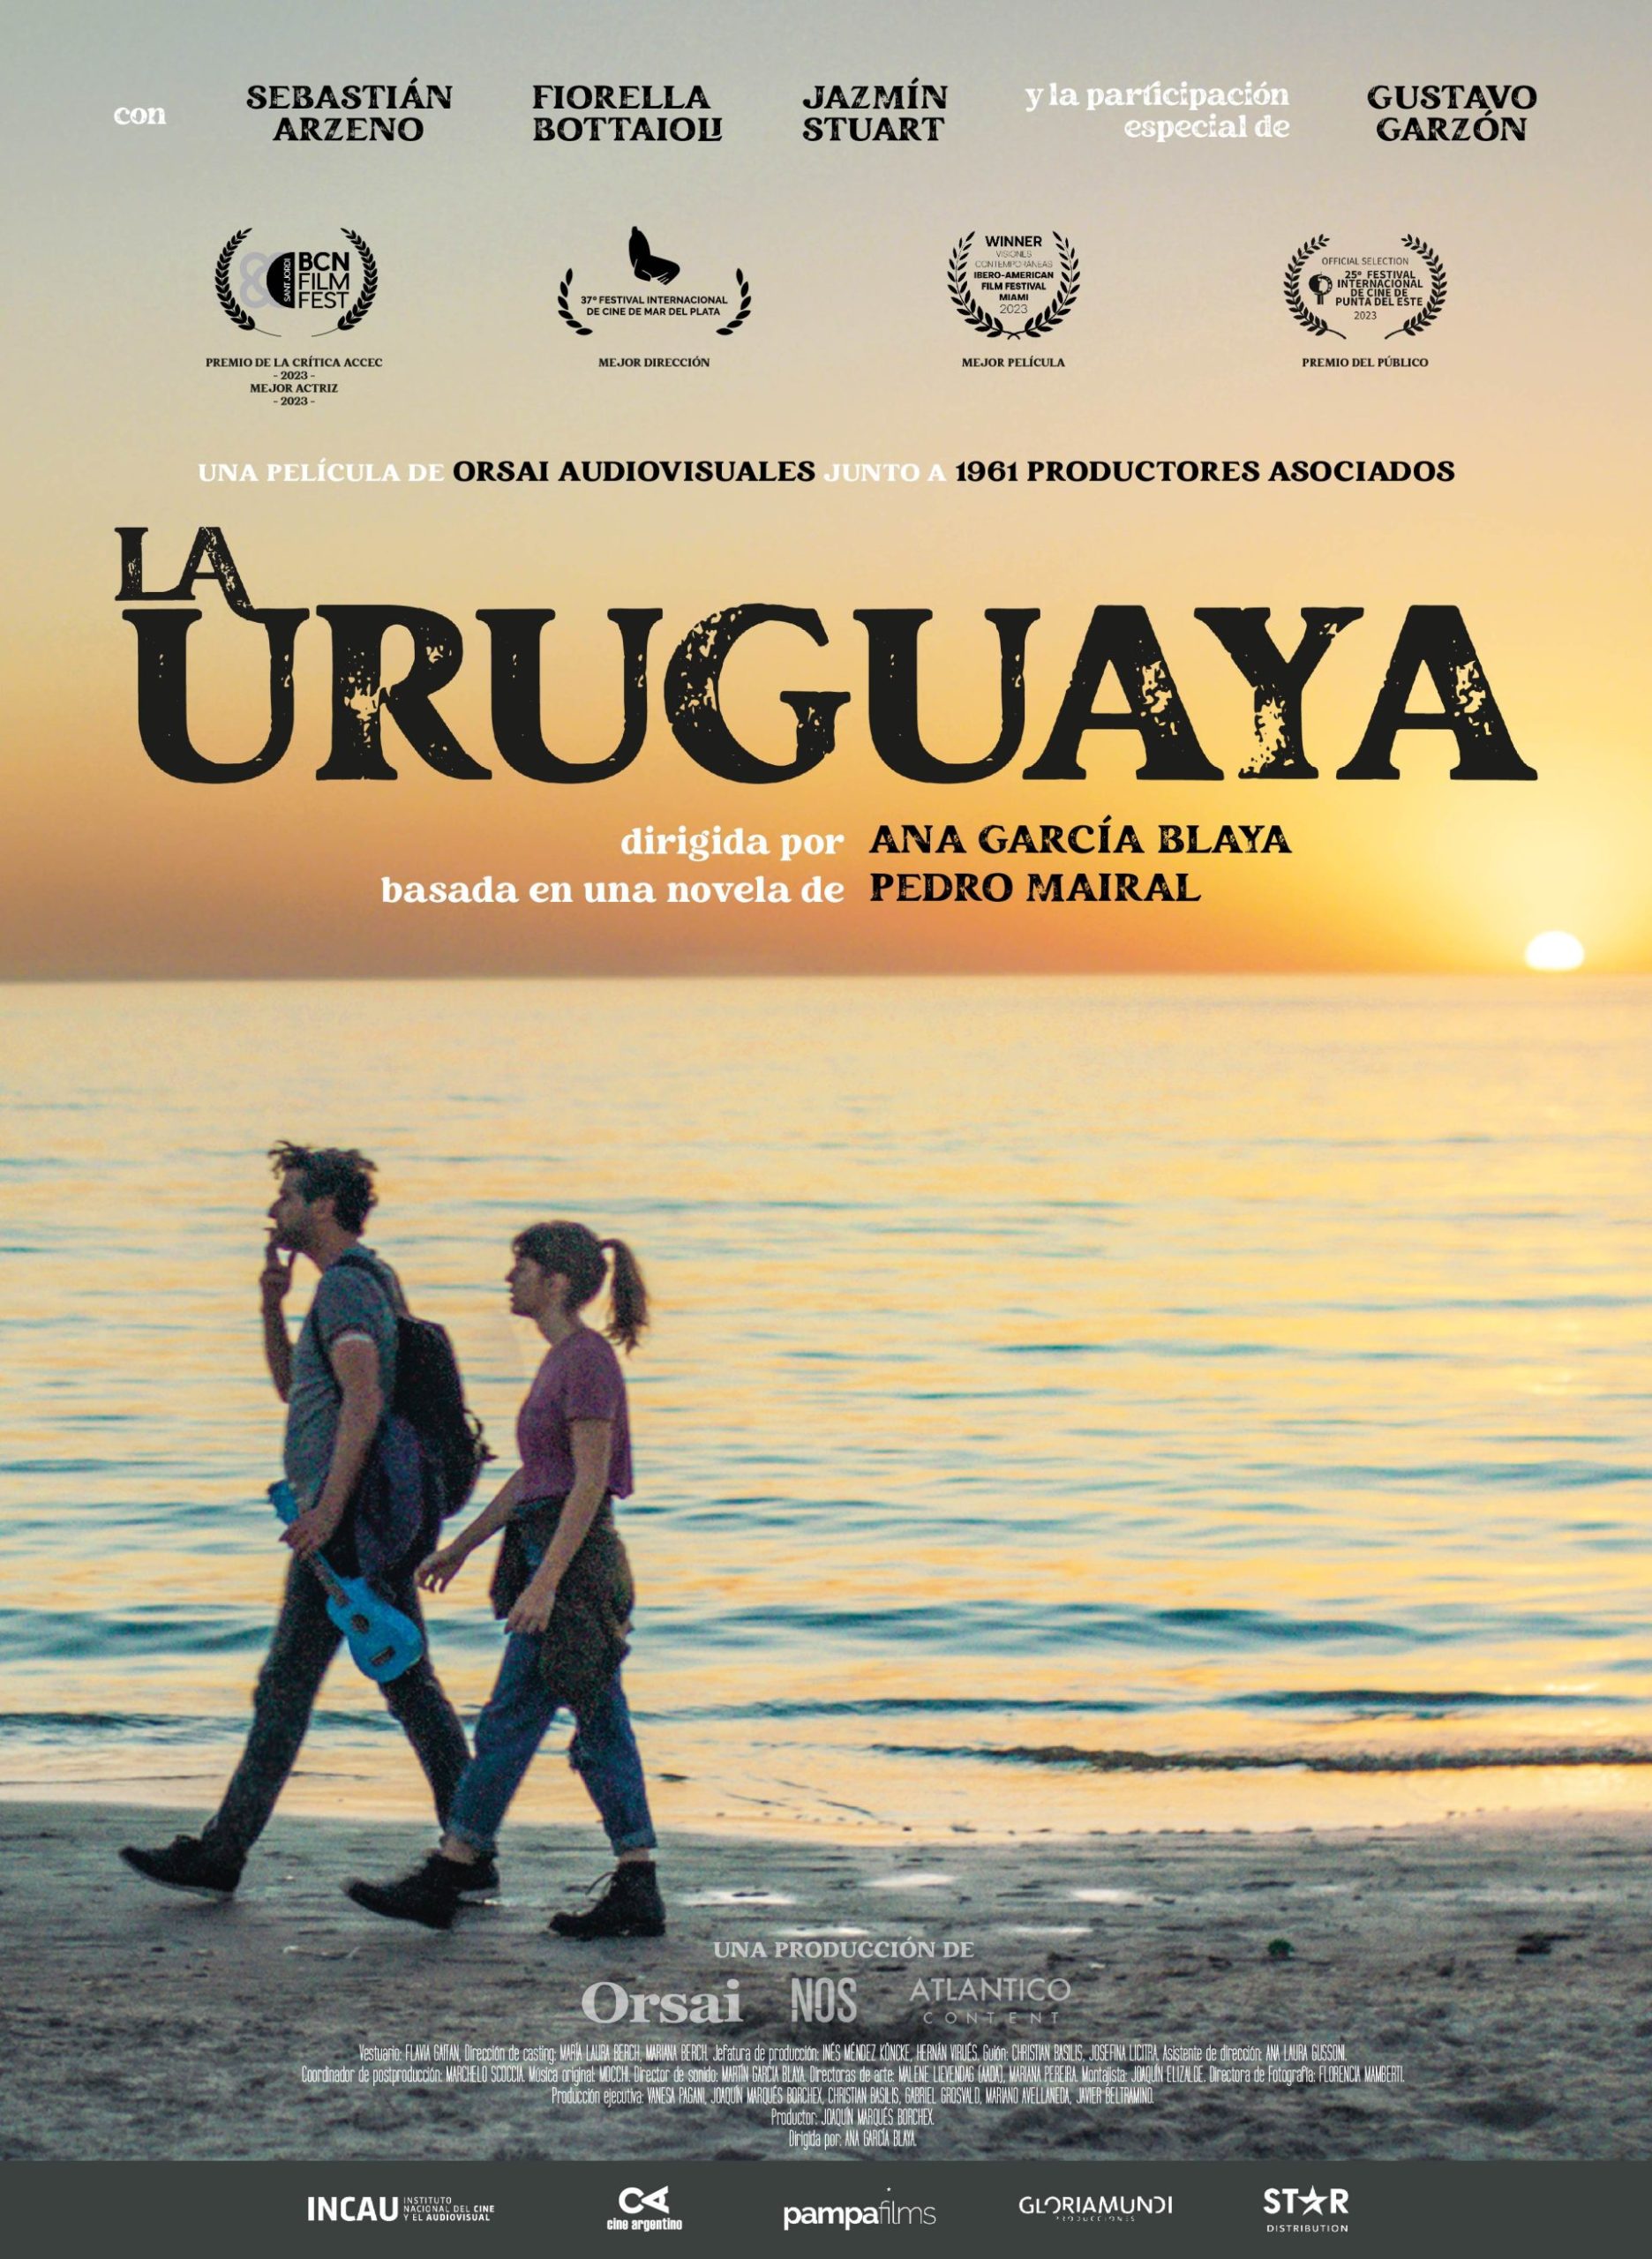 Colón Cinema elige la cinta ‘La uruguaya’, inspirada en la exitosa novela del mismo nombre, para celebrar el mes del libro